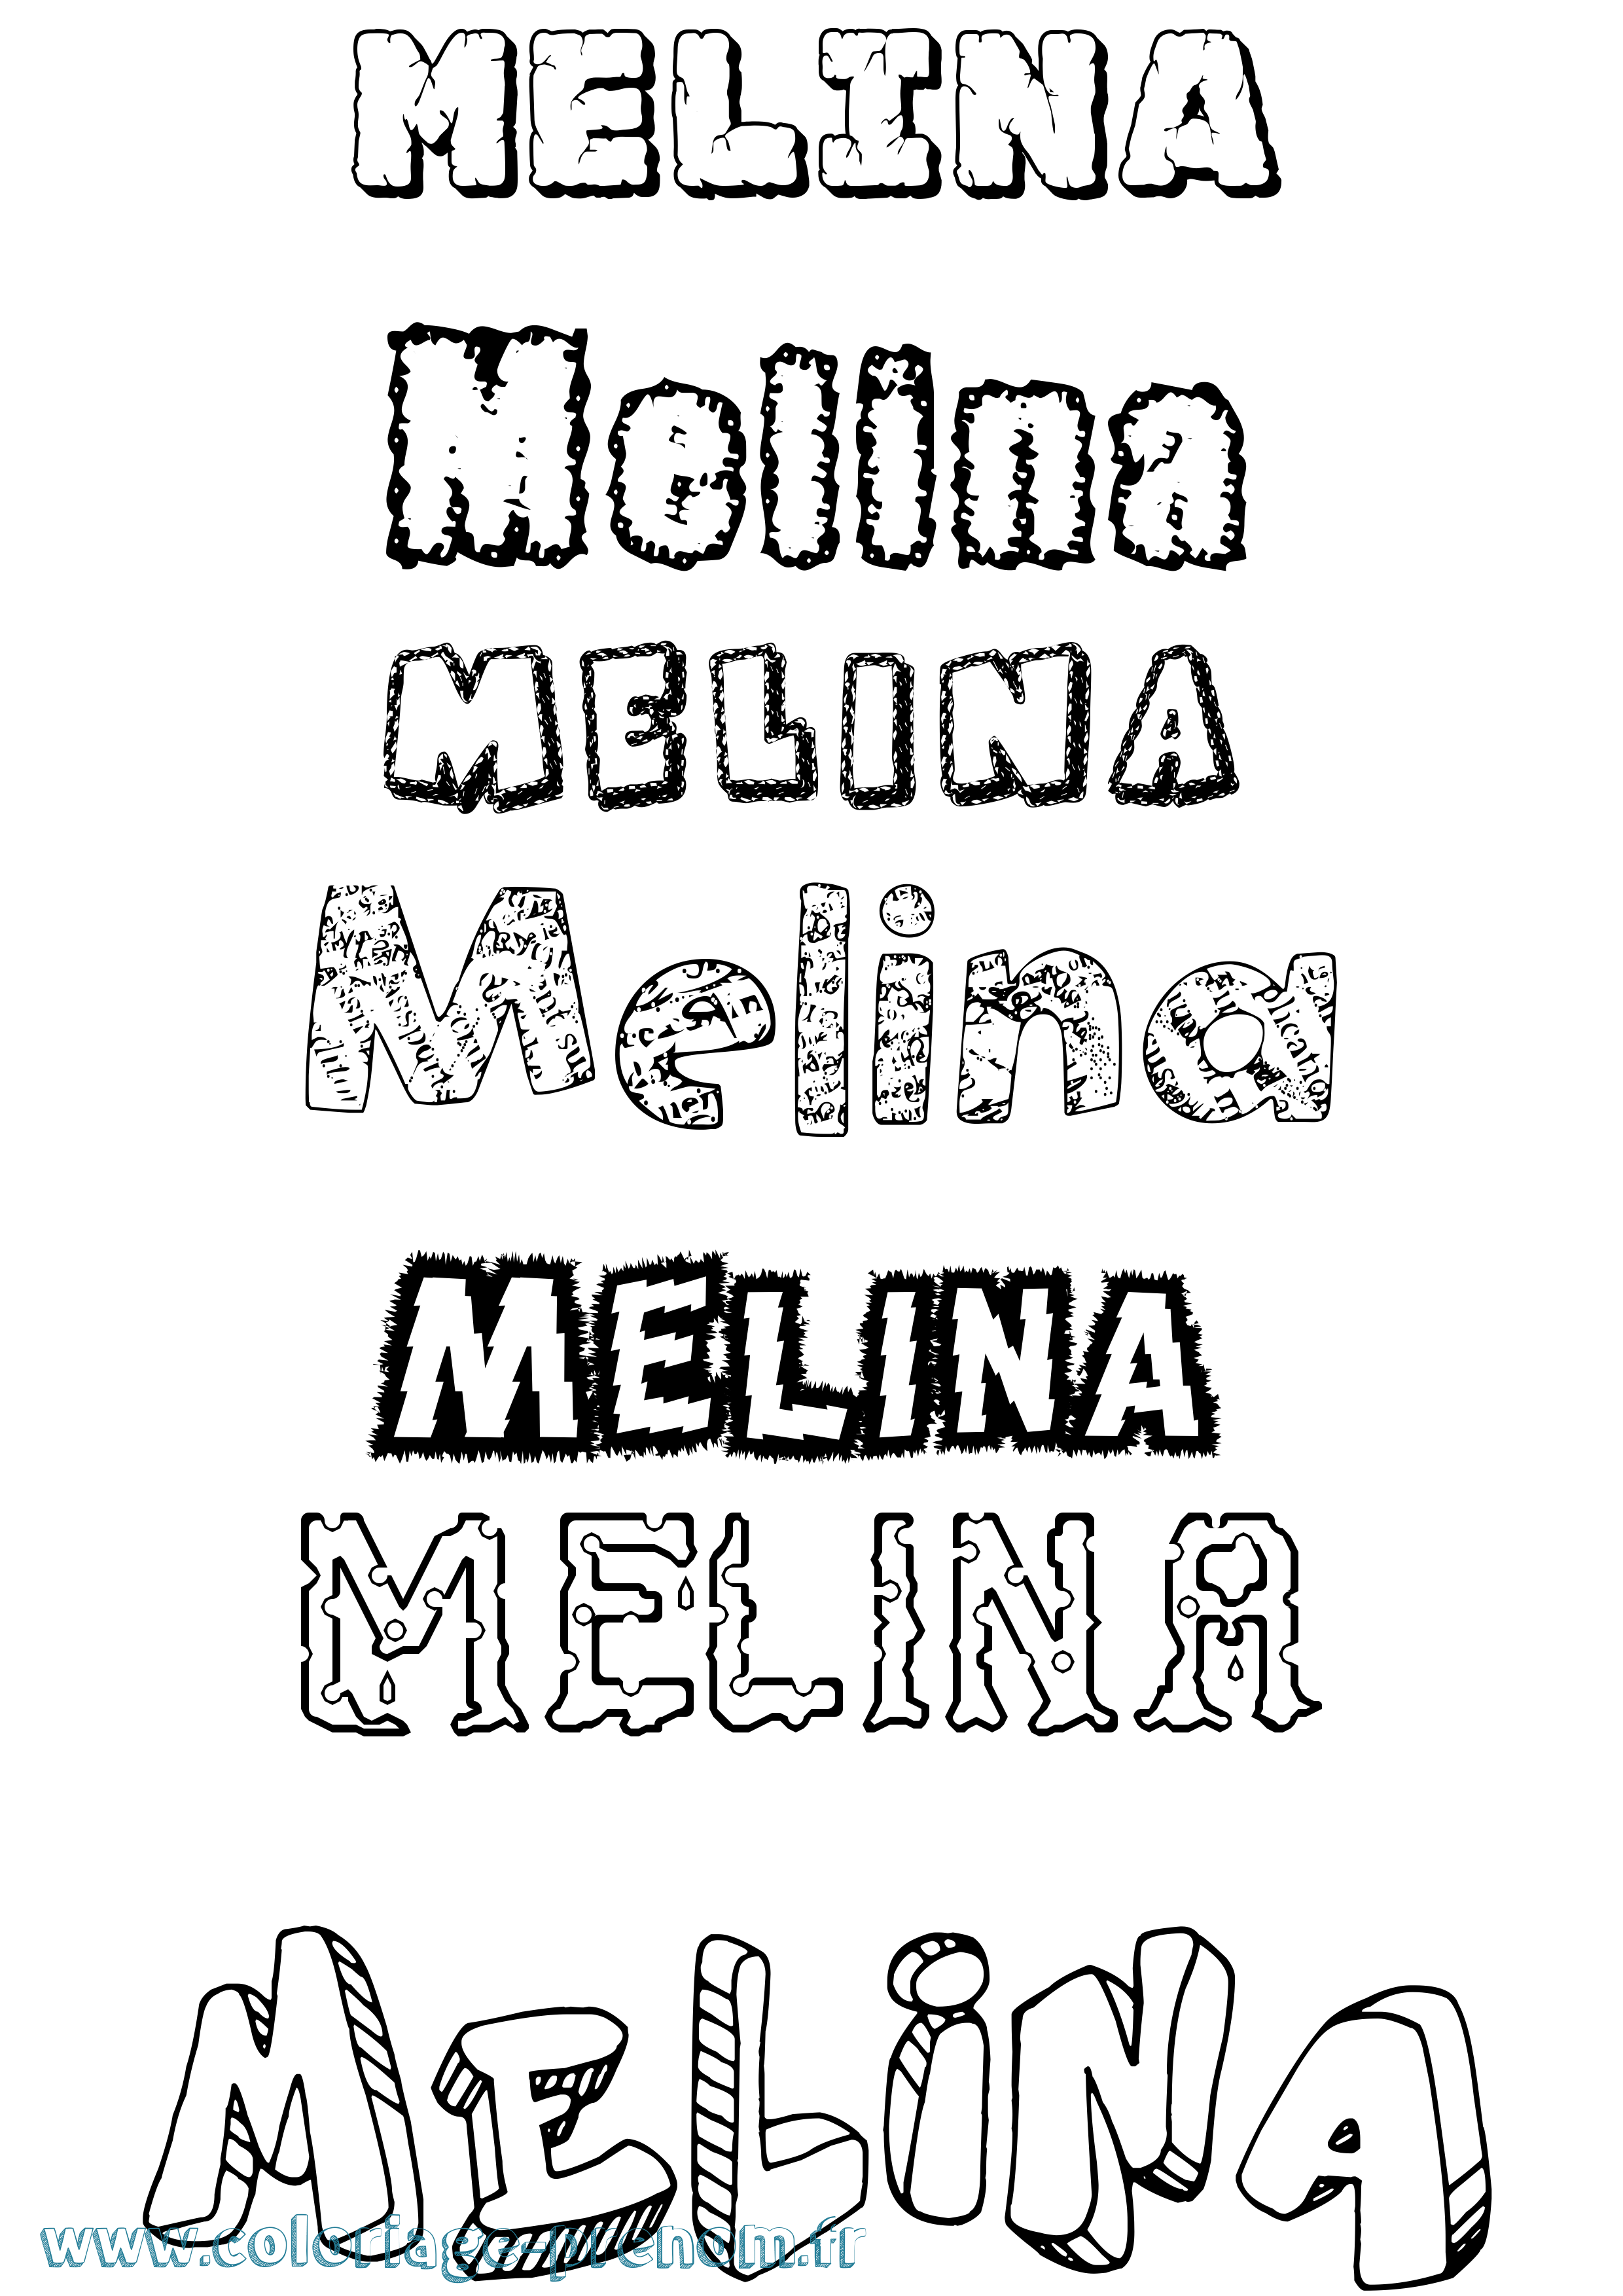 Coloriage prénom Melina